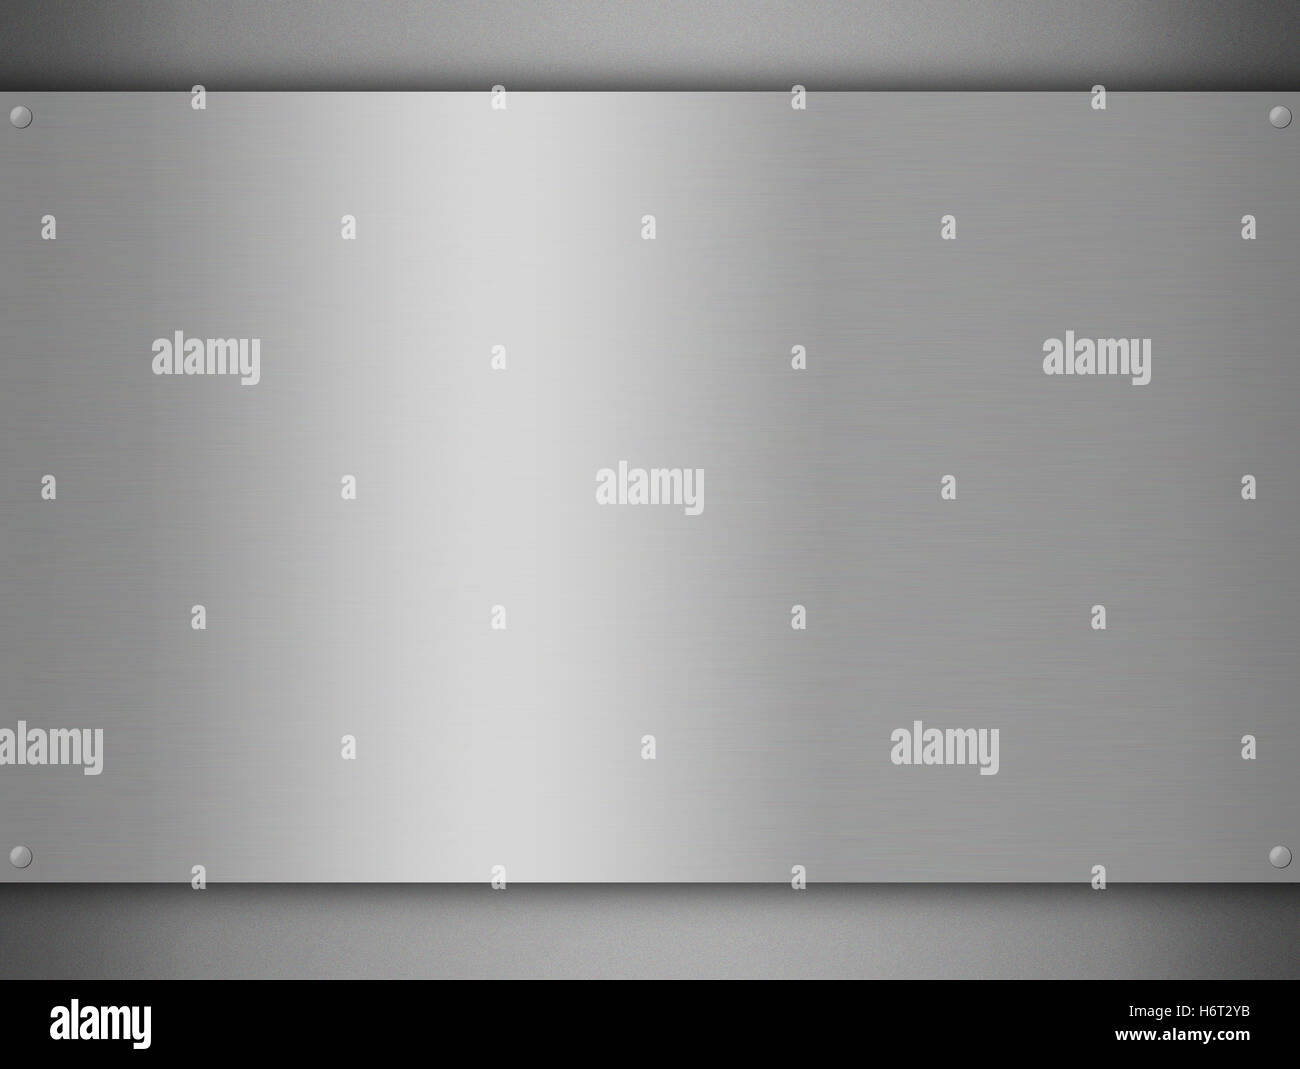 Stahl Metall Kopie Nachahmung Klischee Vorlage Fälschung Plagiat Aluminium Aluminium metallic Seite Hintergrund Blatthintergrund Stockfoto